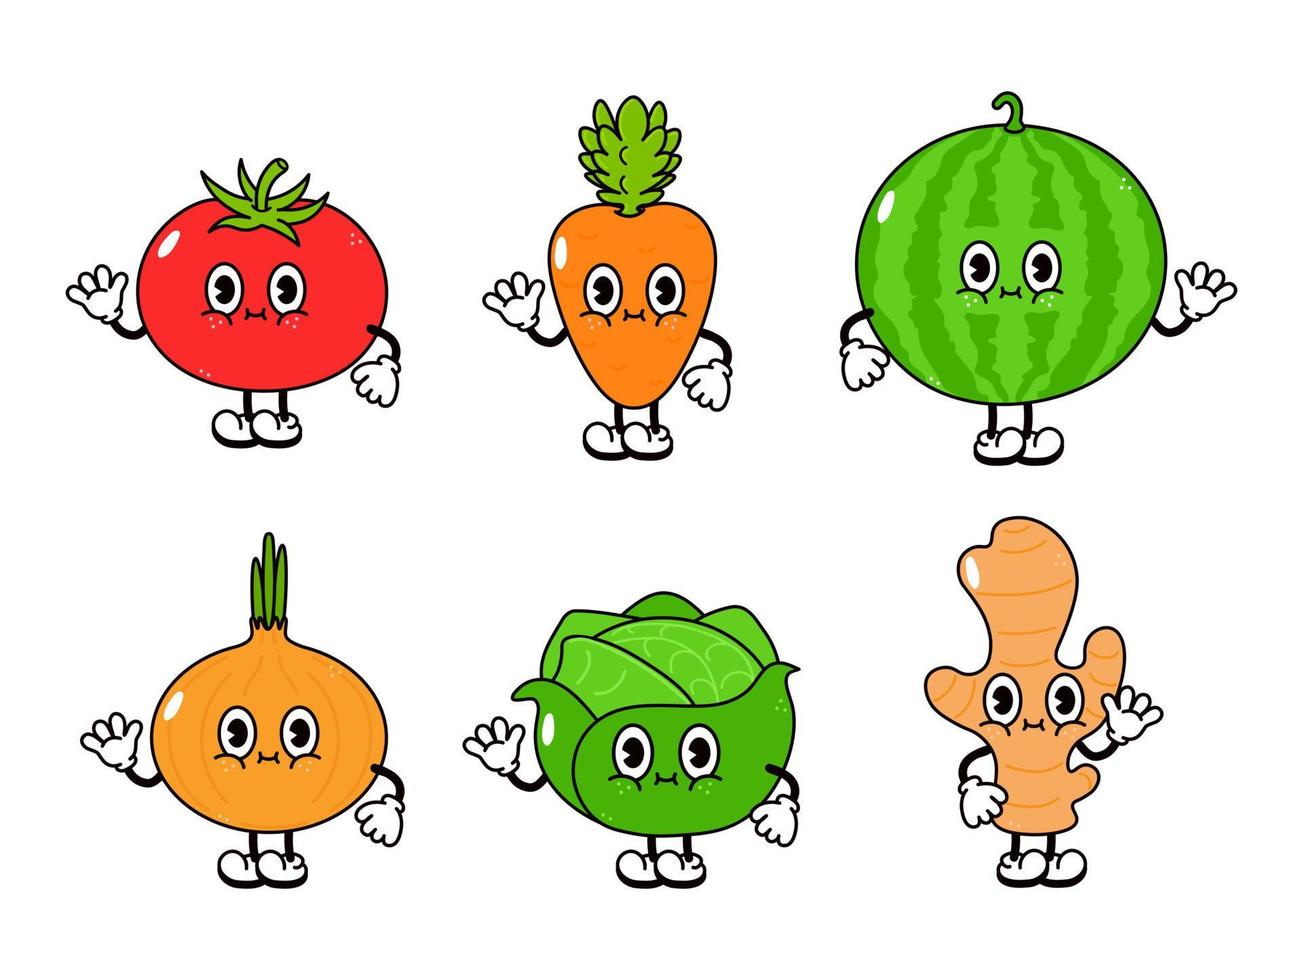 divertido lindo conjunto de personajes de vegetales felices. icono de ilustración de personaje kawaii de dibujos animados dibujados a mano vectorial. aislado sobre fondo blanco. lindo tomate, sandía, cebolla, repollo, jengibre, zanahoria vector